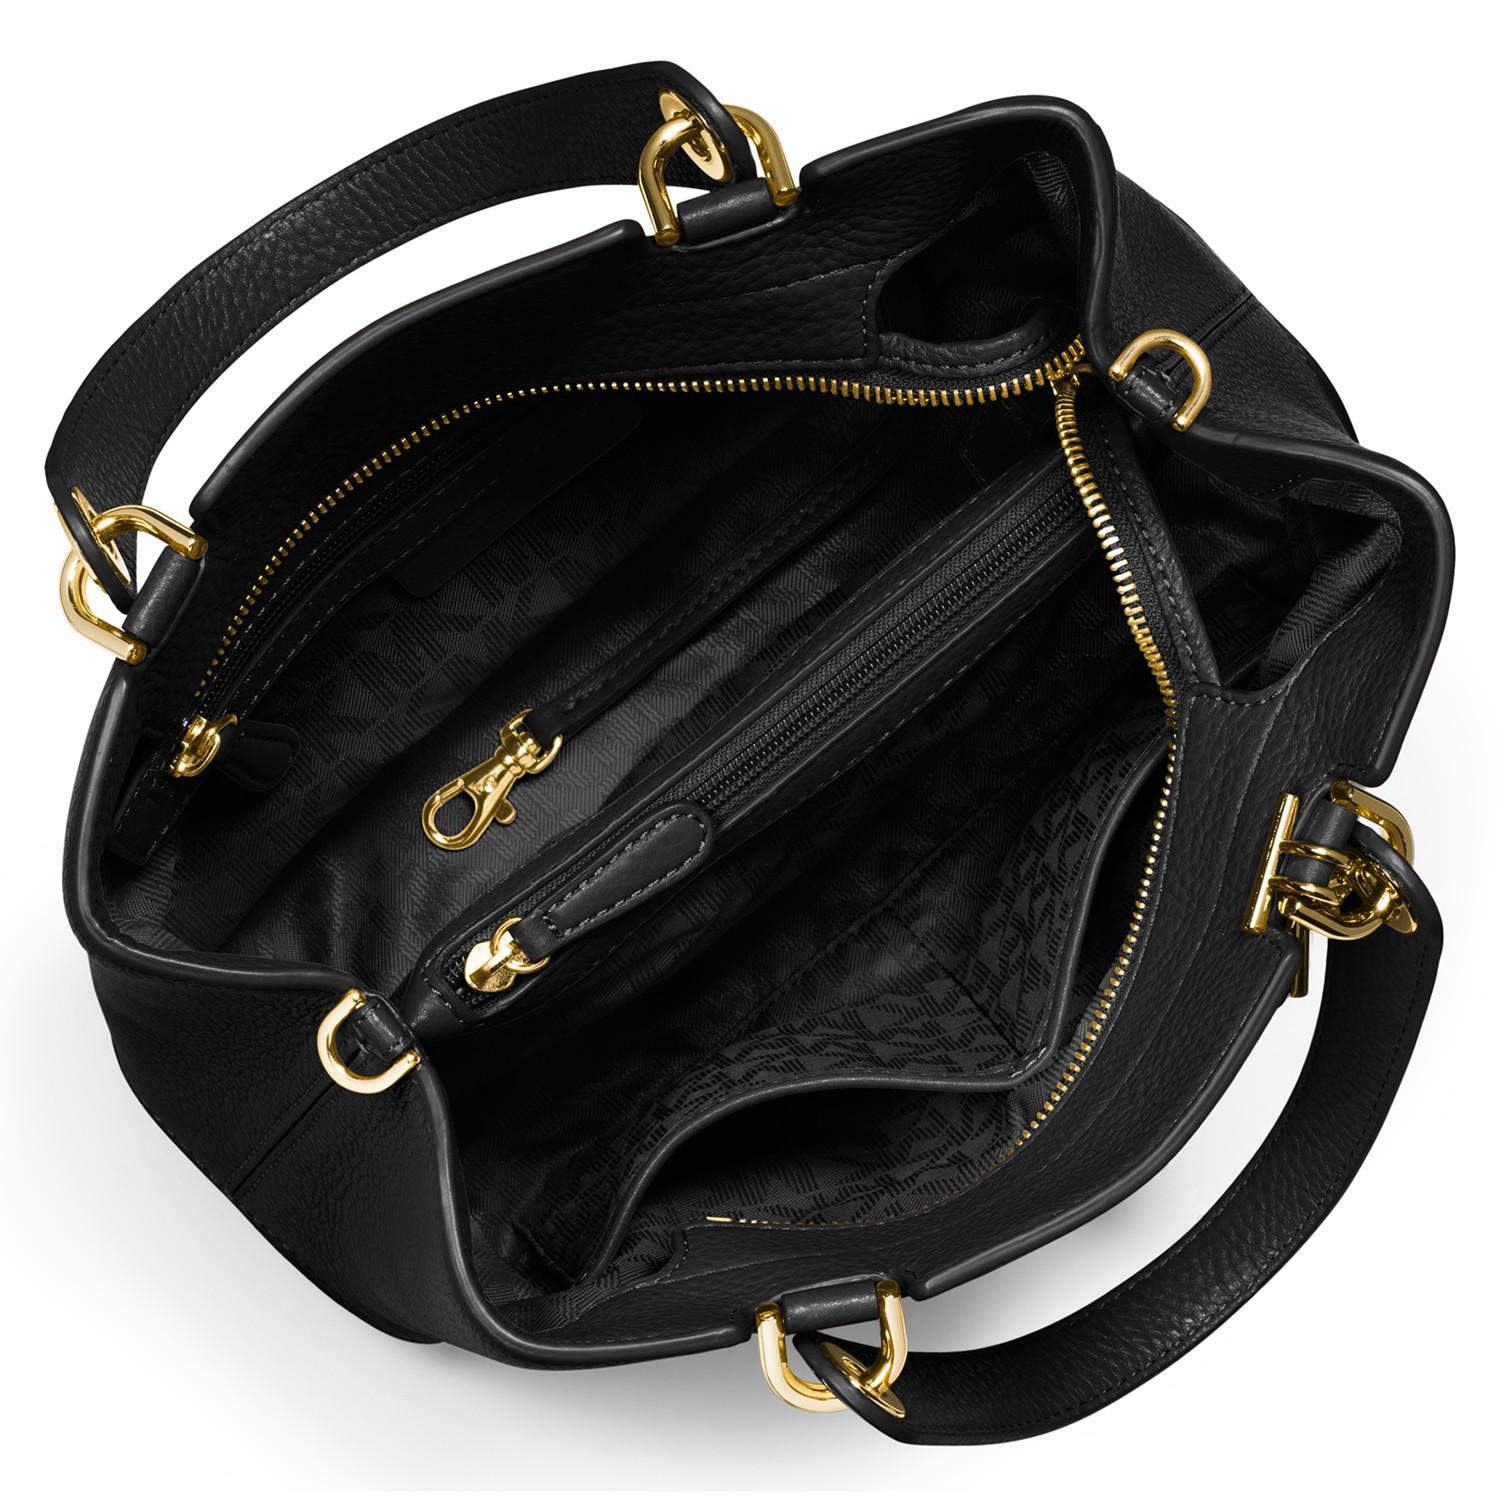 MICHAEL Michael Kors Anabelle Medium Top Zip Leather Tote Bag in Black - Lyst